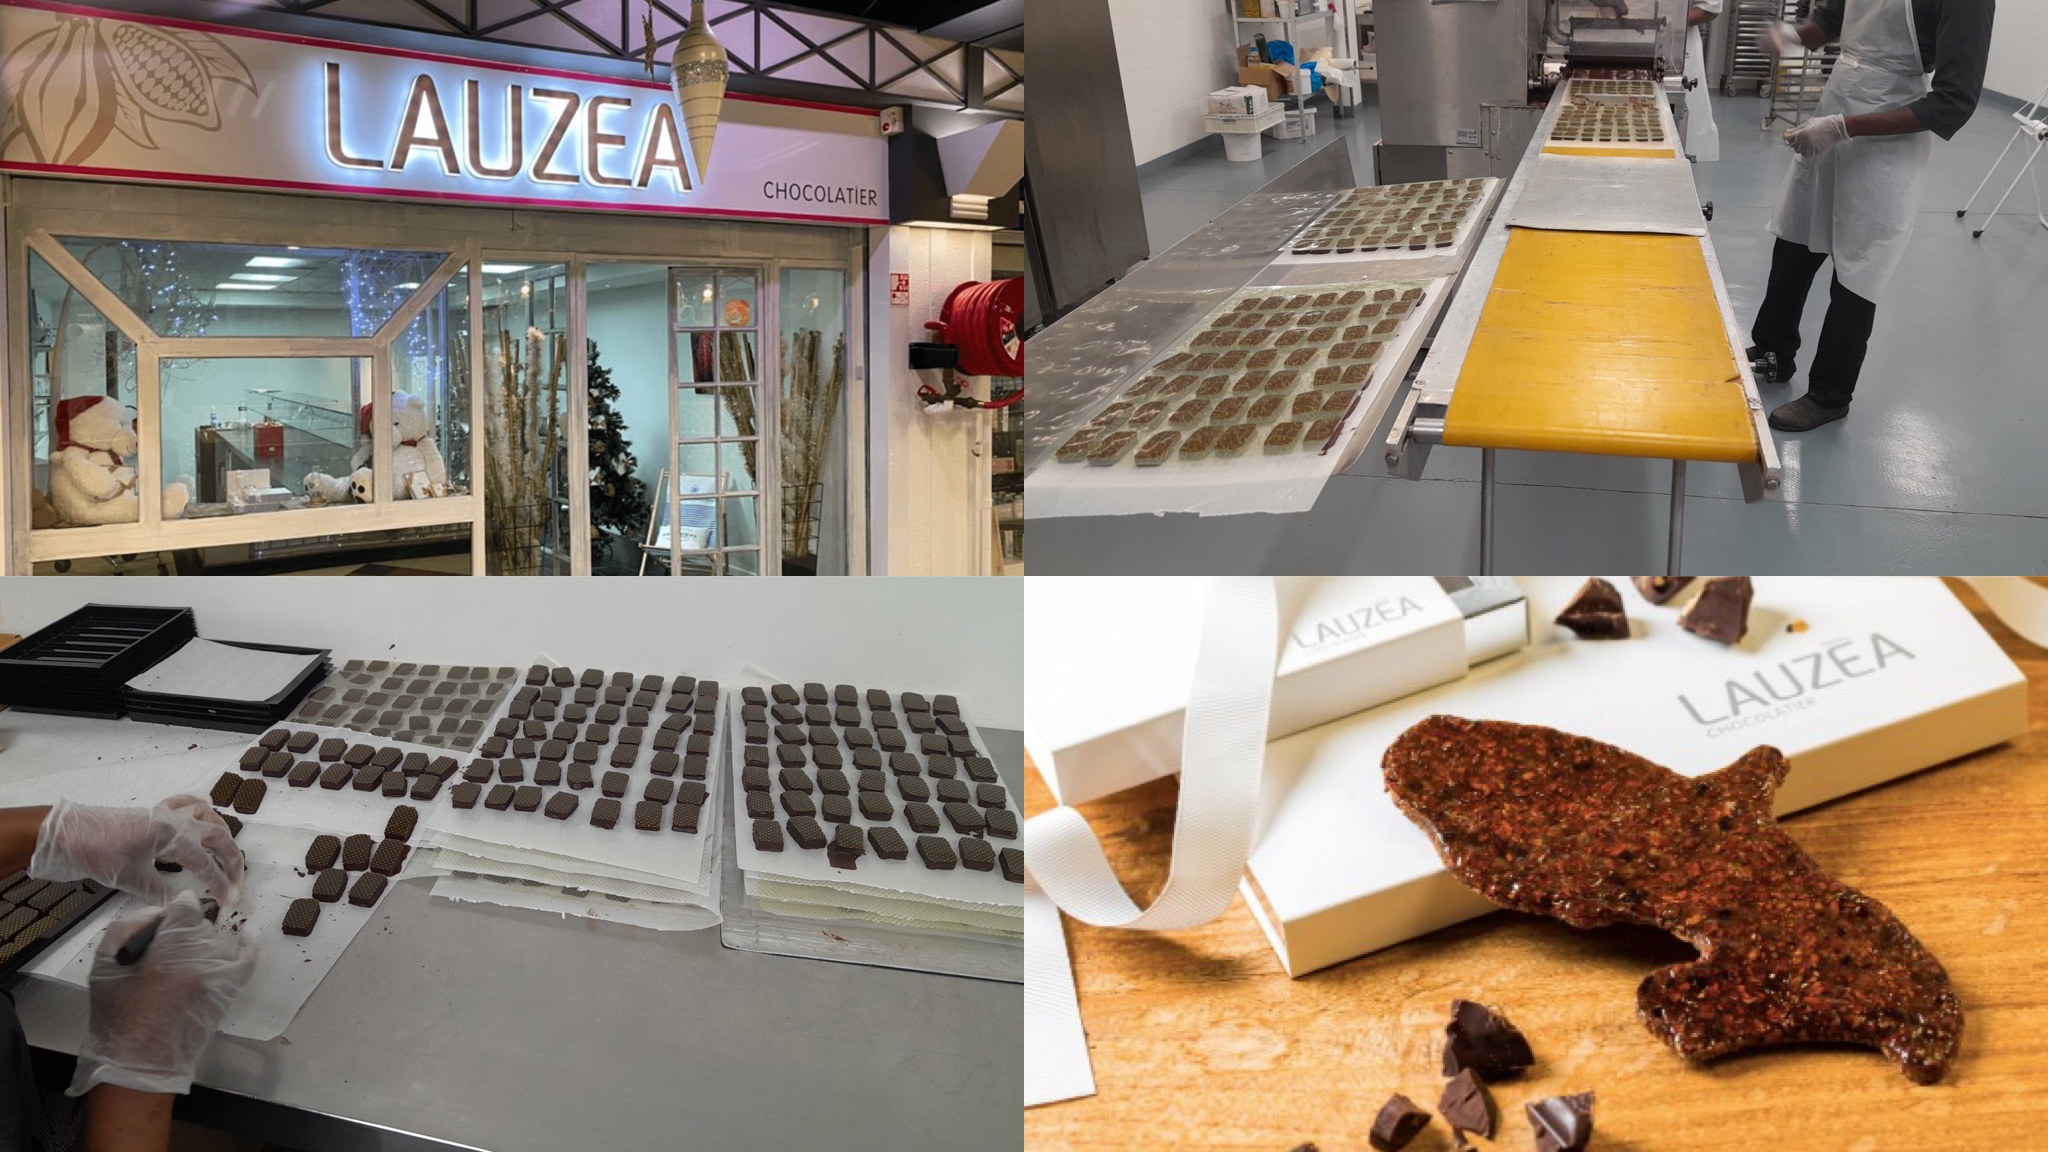     « Chocolat Lauzéa » : déjà 20 ans, une épopée familiale martiniquaise

